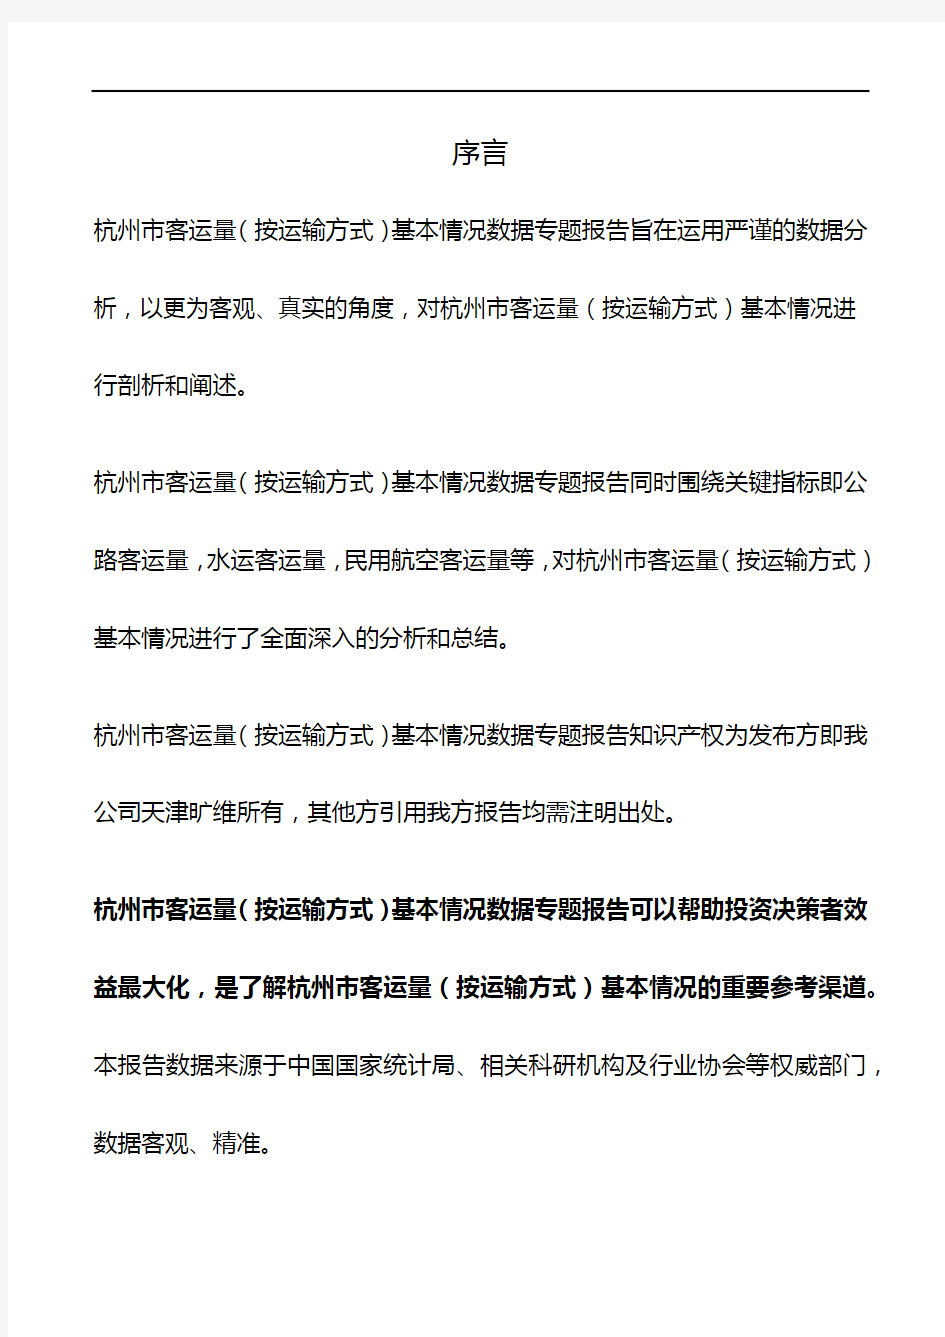 杭州市(全市)客运量(按运输方式)基本情况3年数据专题报告2019版